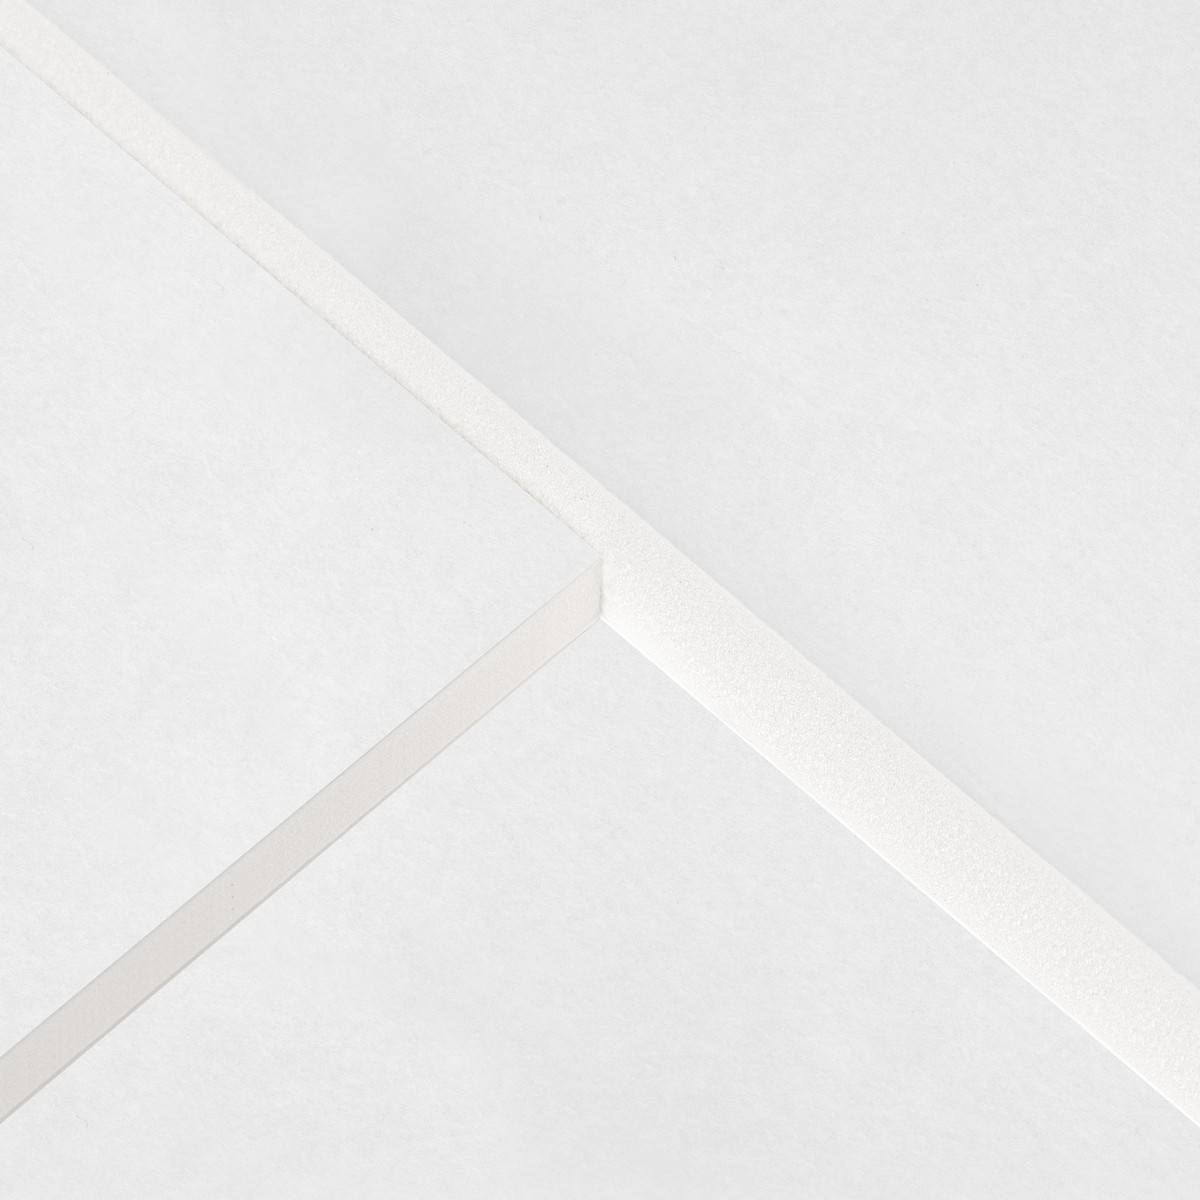 KAPA® plast White Core (Lightweight foam boards)